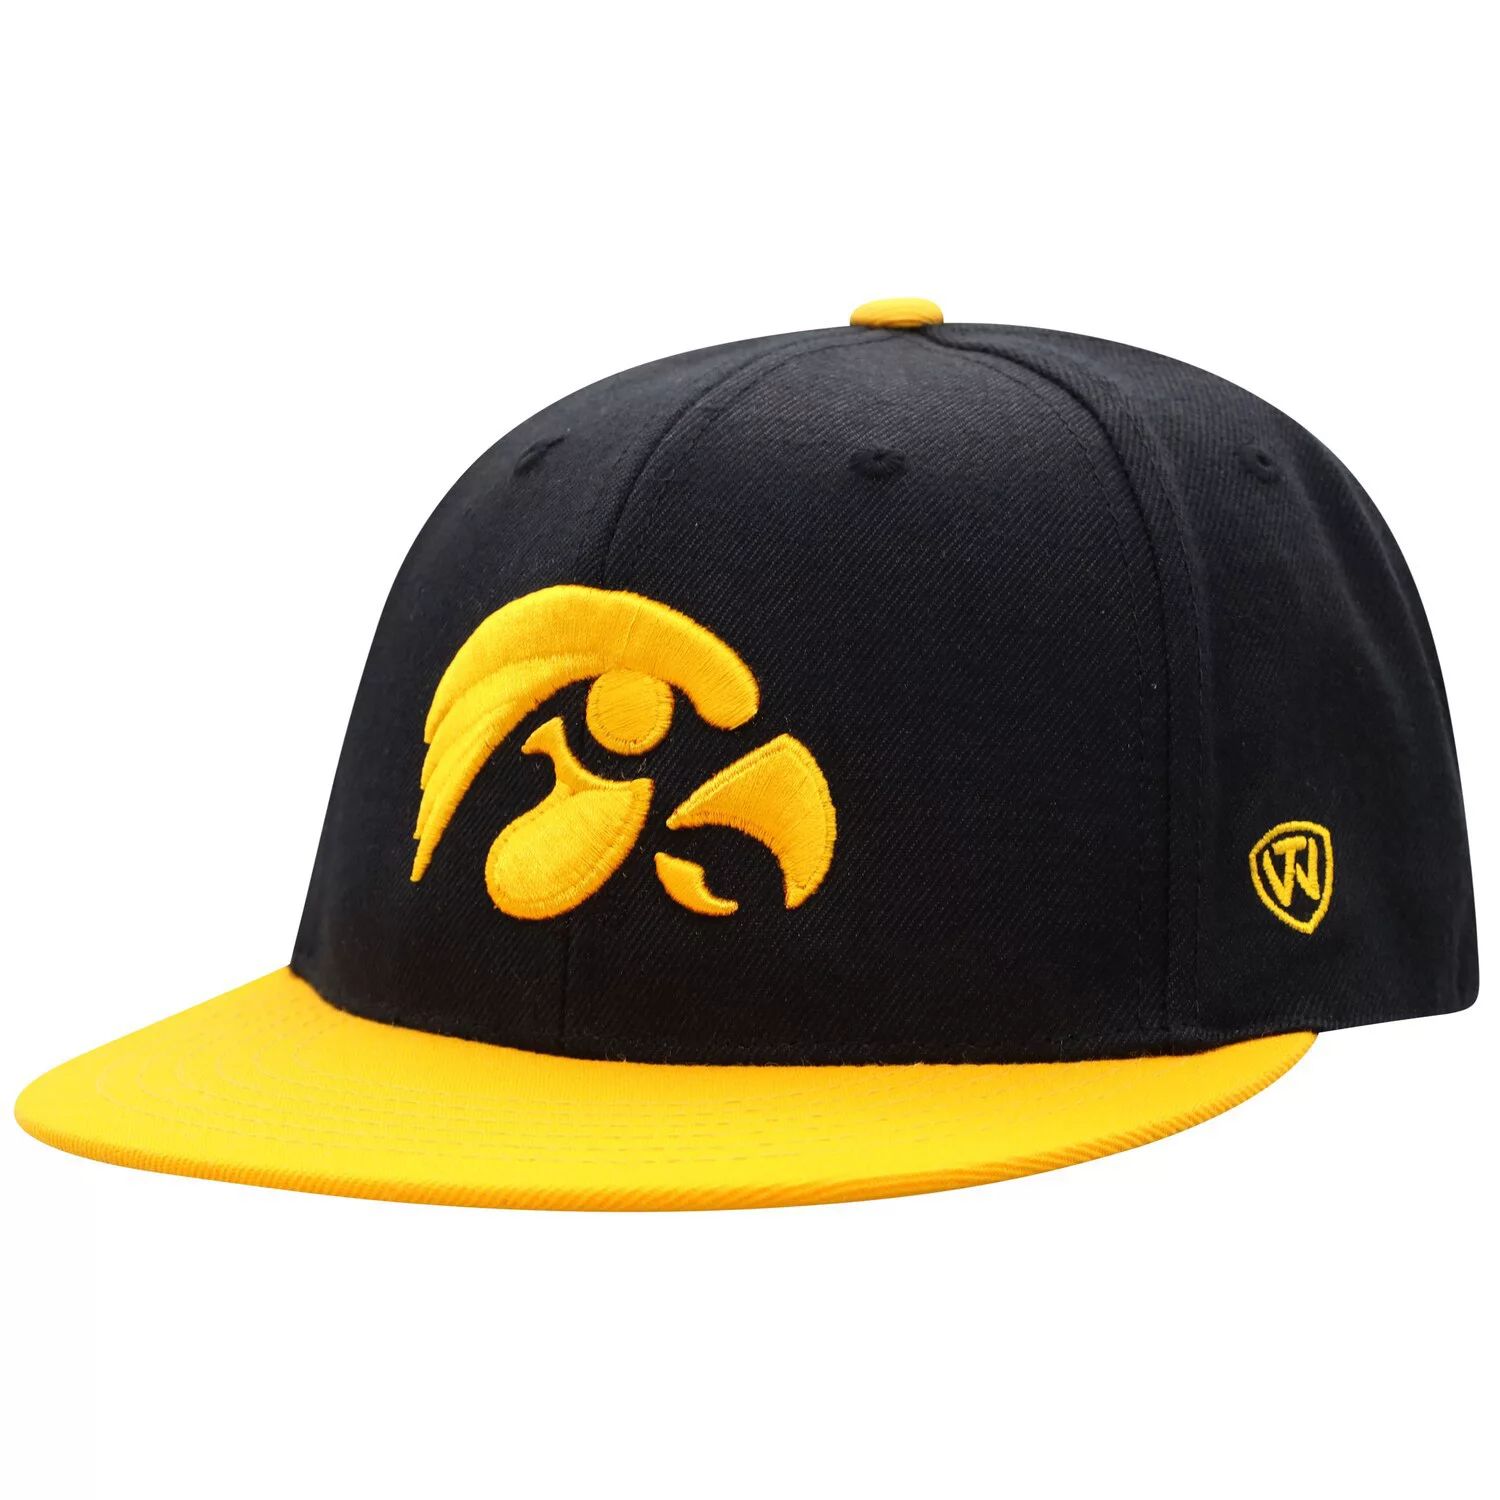 Мужская двухцветная приталенная шляпа Top of the World черного/золотого цвета Iowa Hawkeyes Team Color